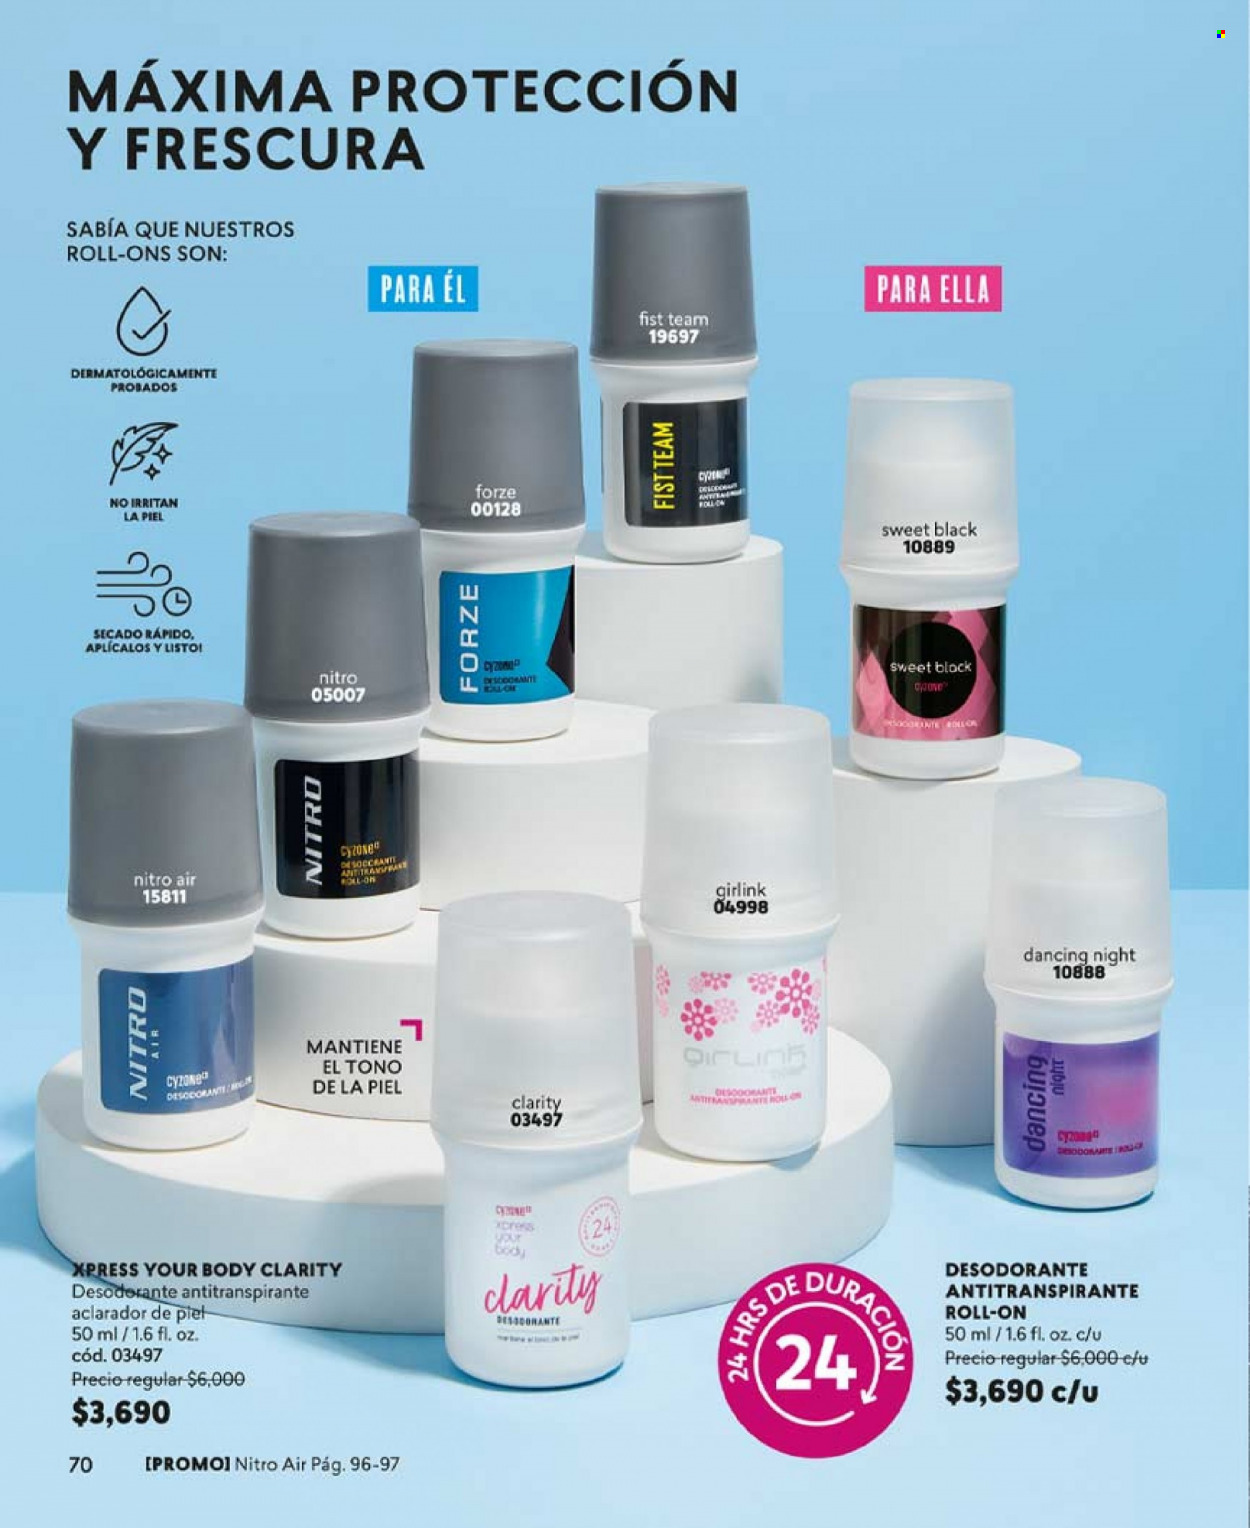 Catálogo Cyzone - Ventas - desodorante, antitranspirante. Página 70.